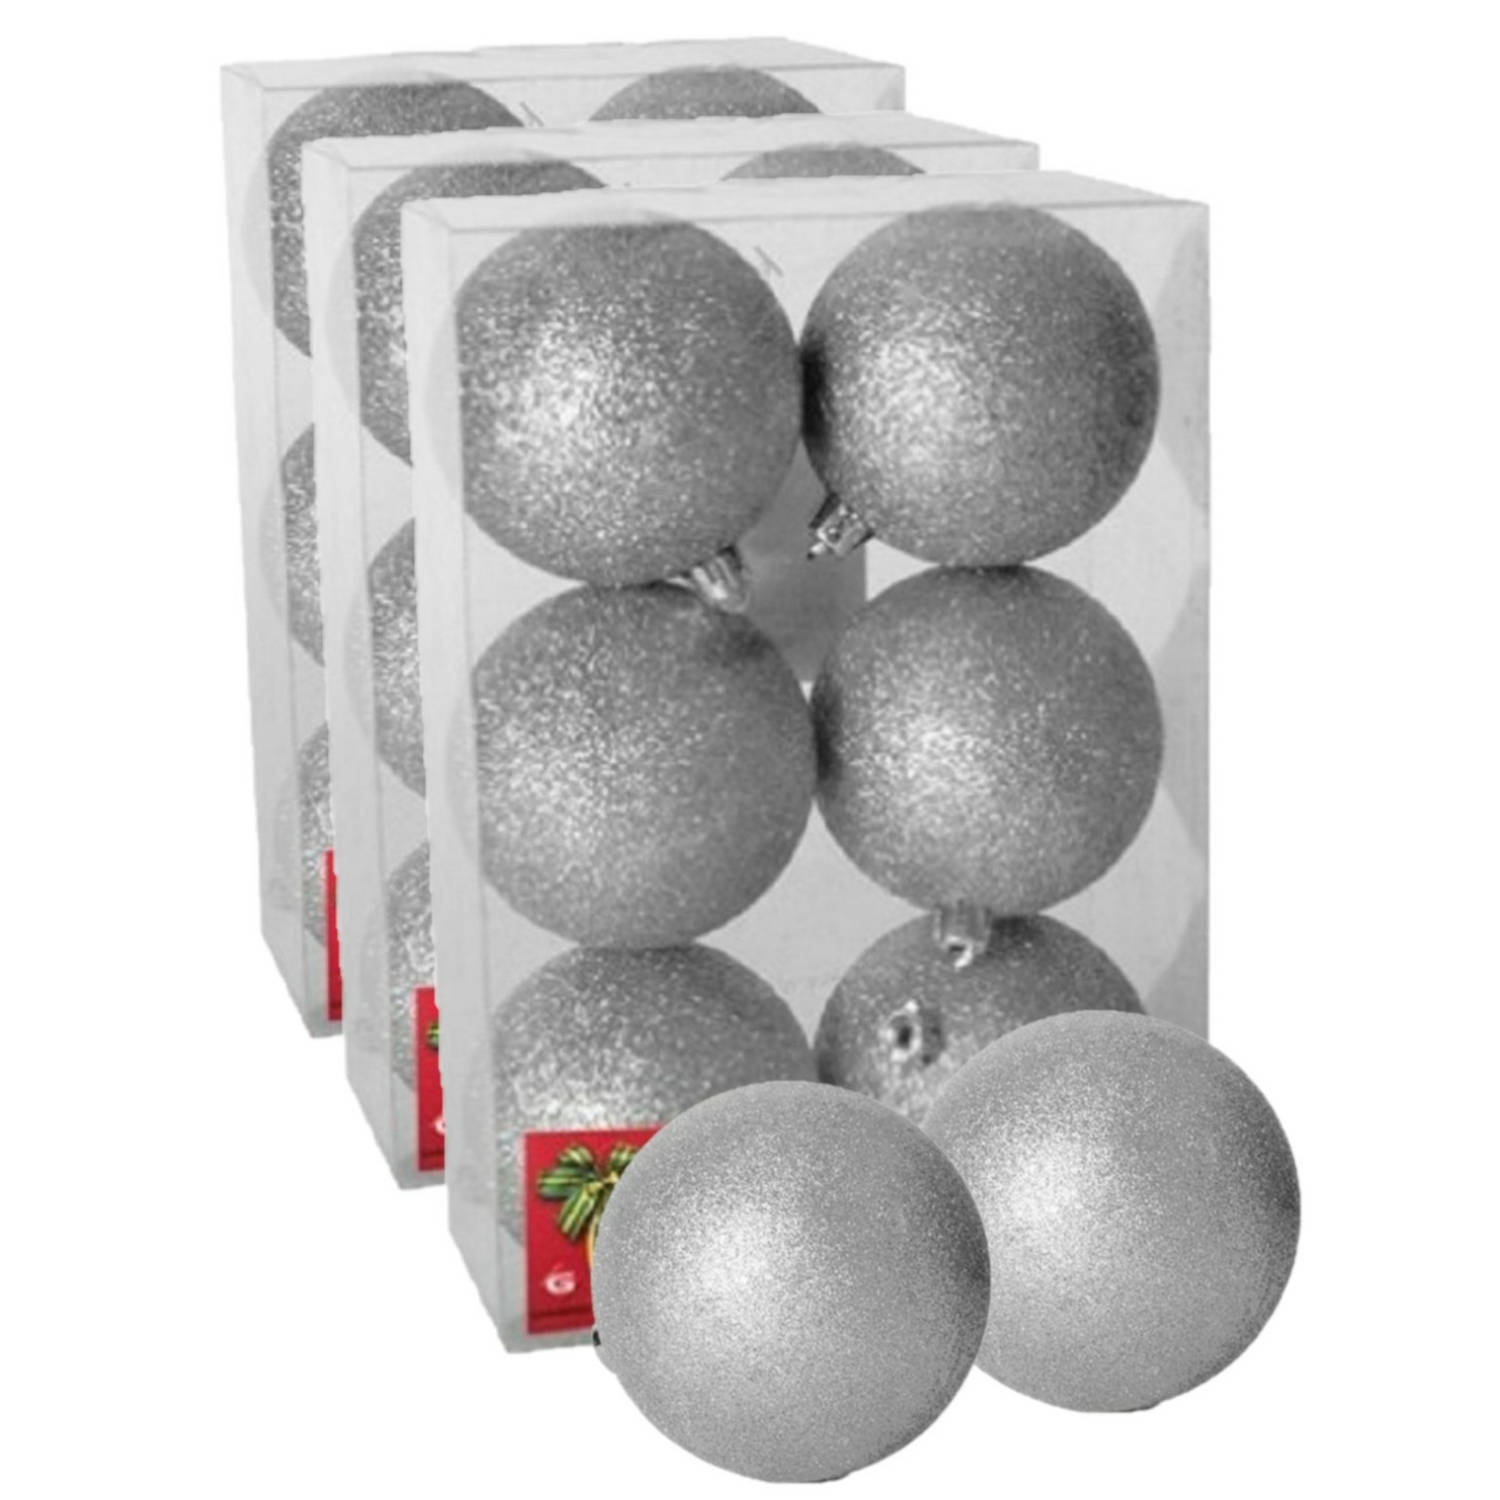 18x stuks kerstballen zilver glitters kunststof 4 cm Kerstbal